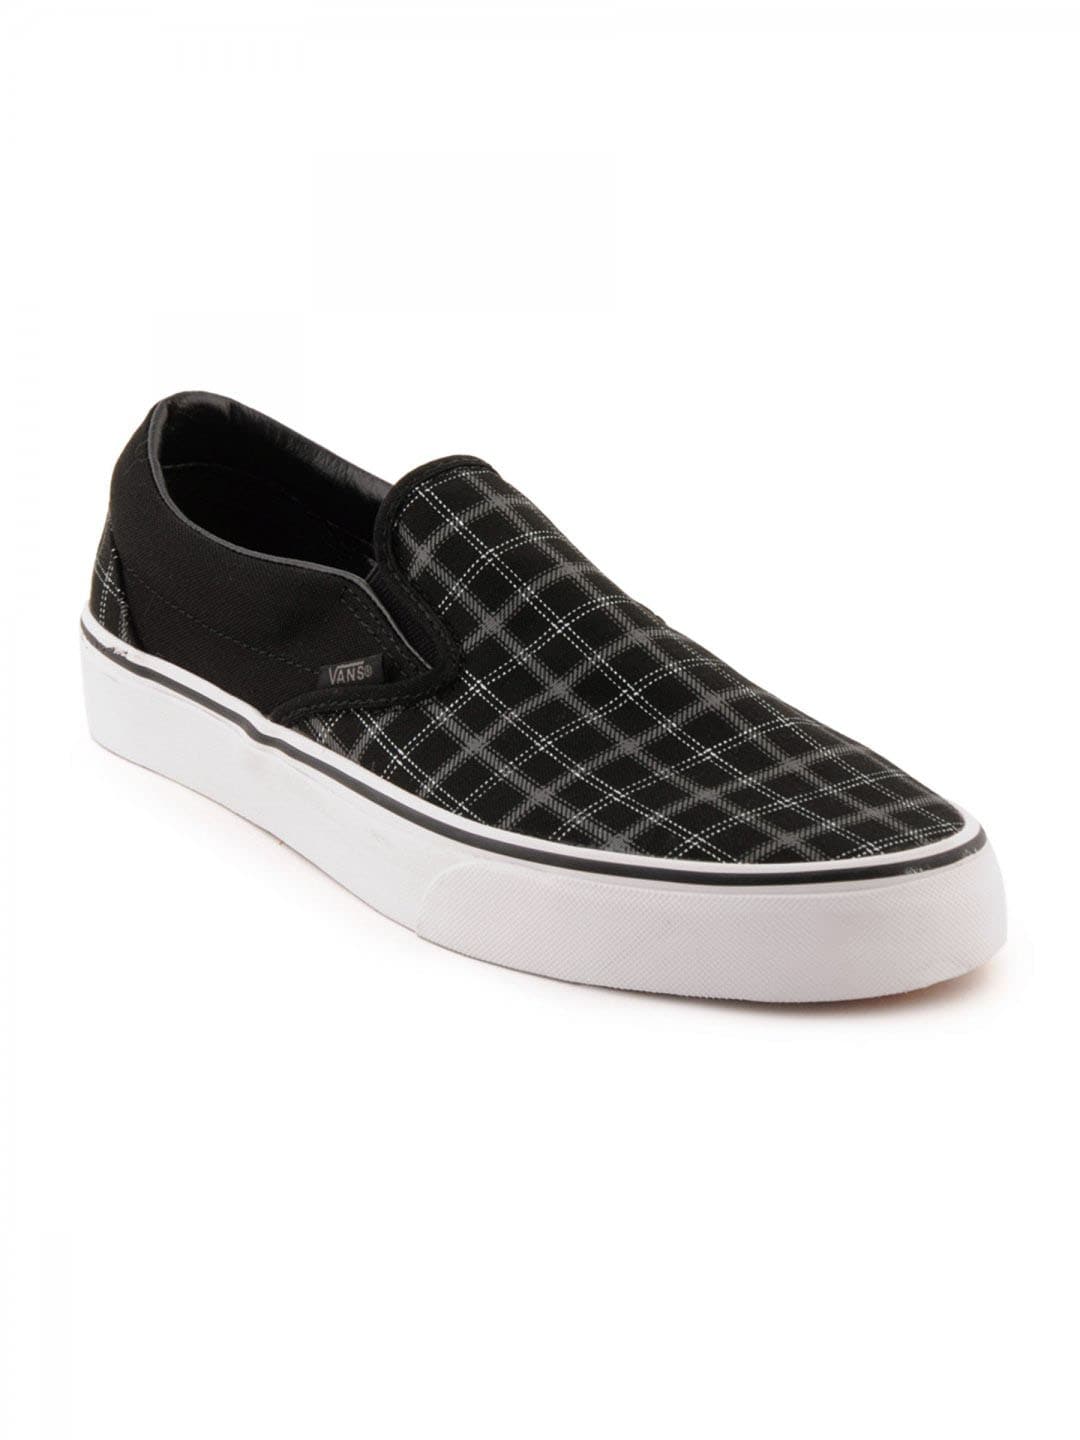 Vans Men Classic Slip-On Black Casual Shoes